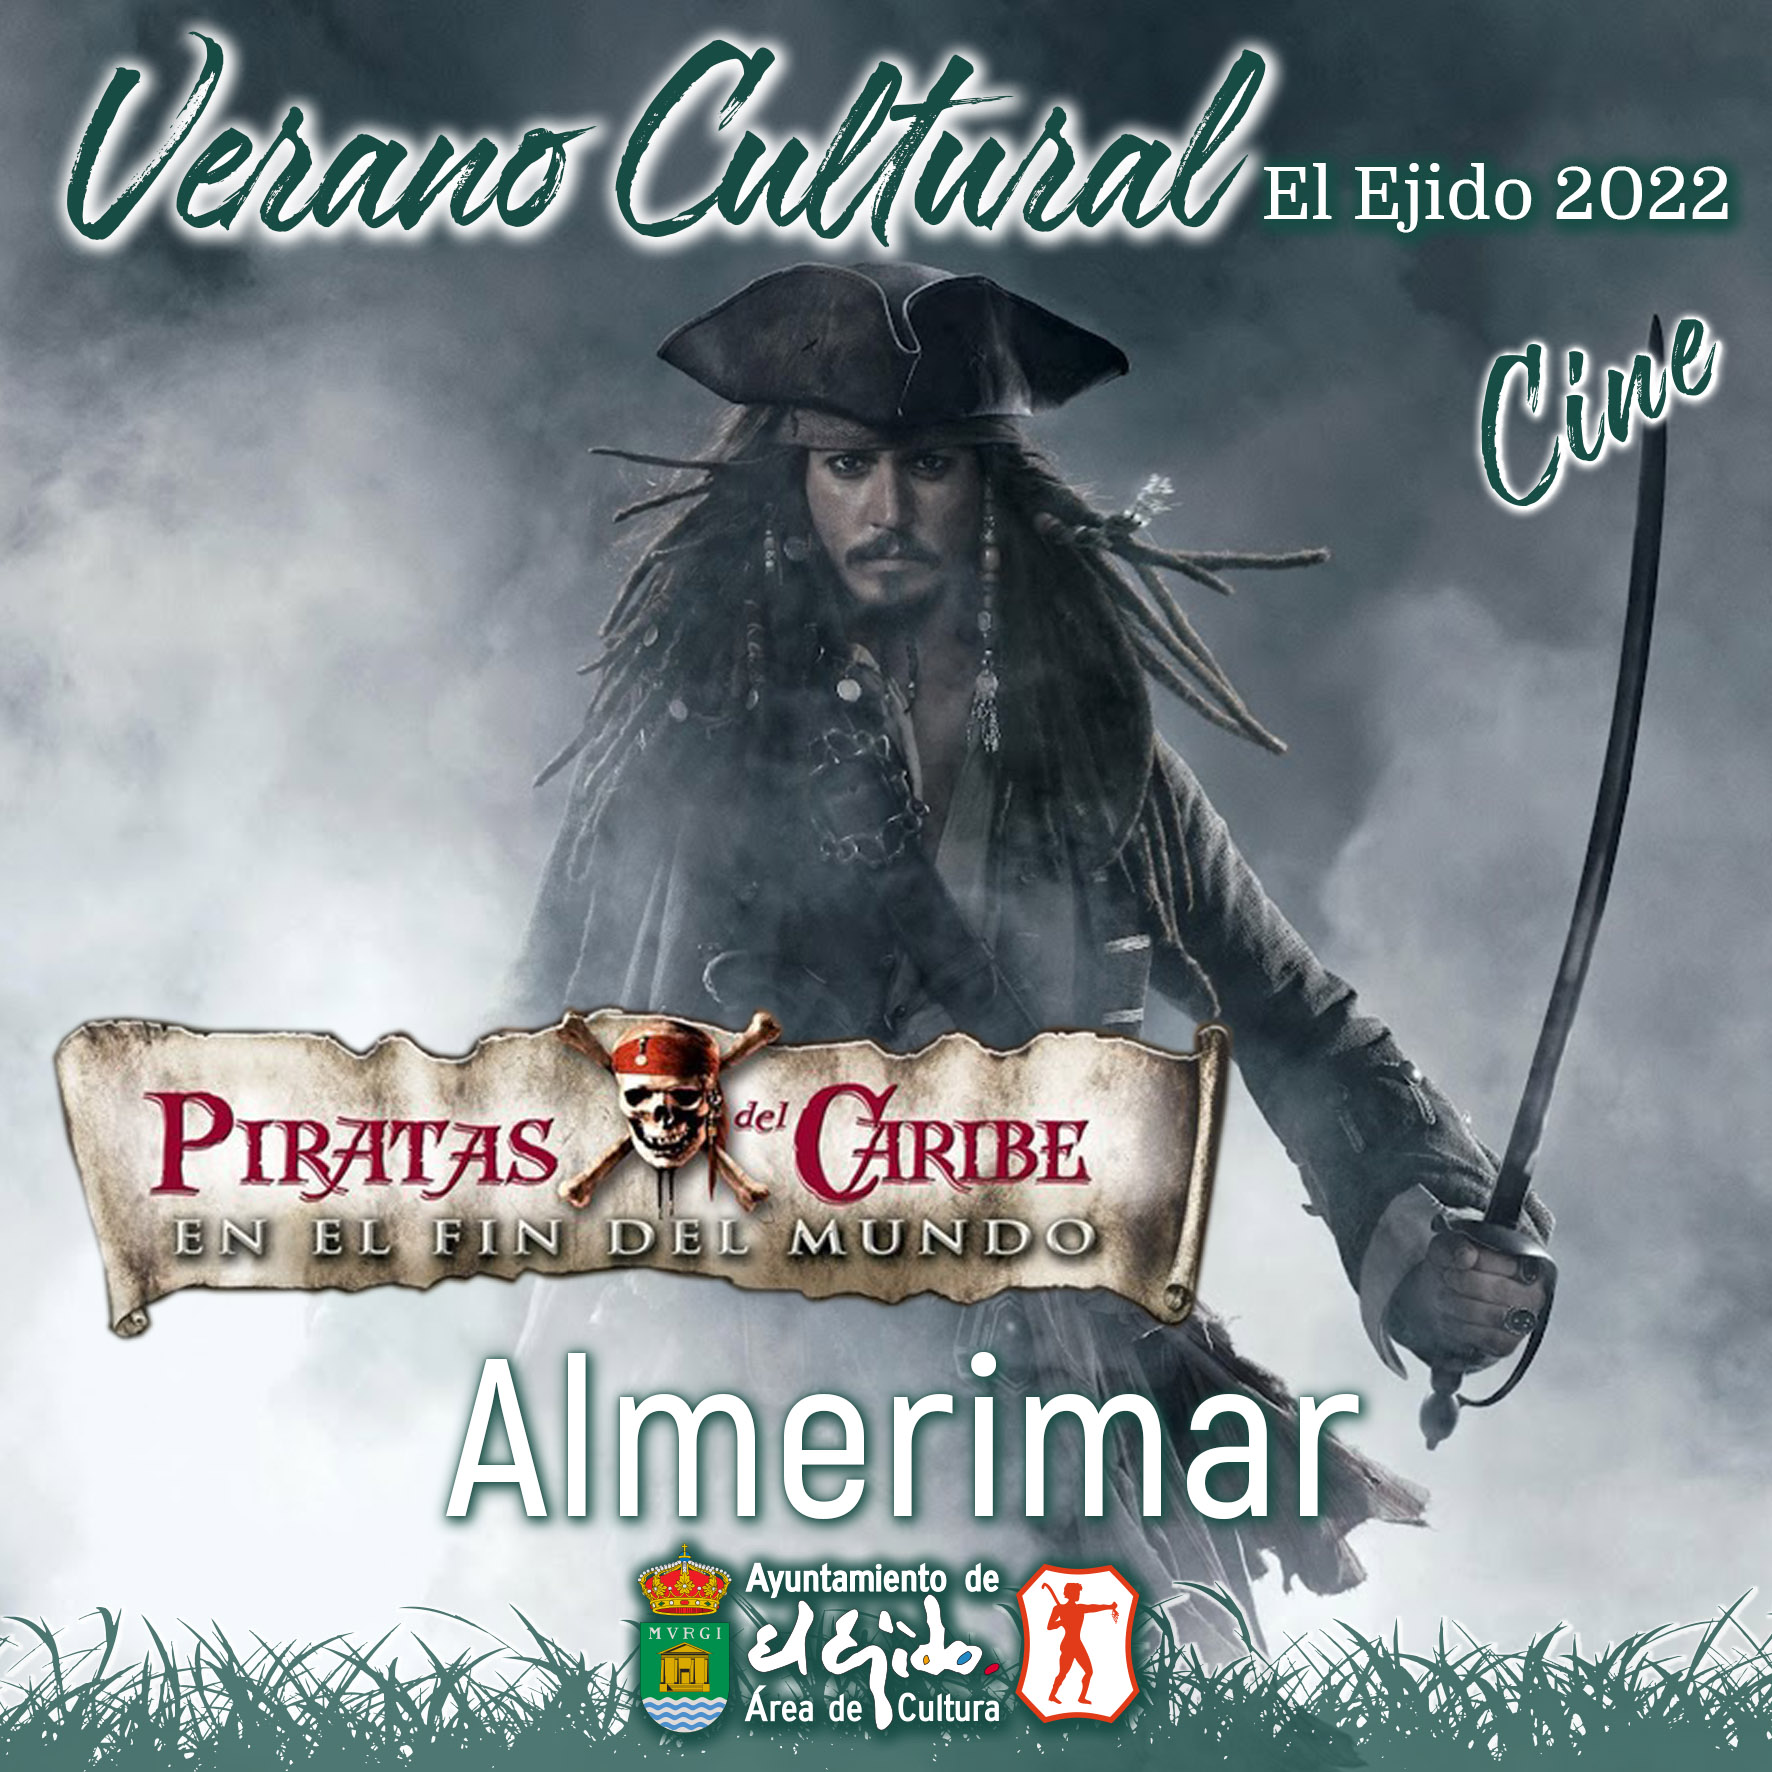 Verano Cultural 2022 de El Ejido – Cine – Almerimar – Piratas del Caribe en el fin del mundo